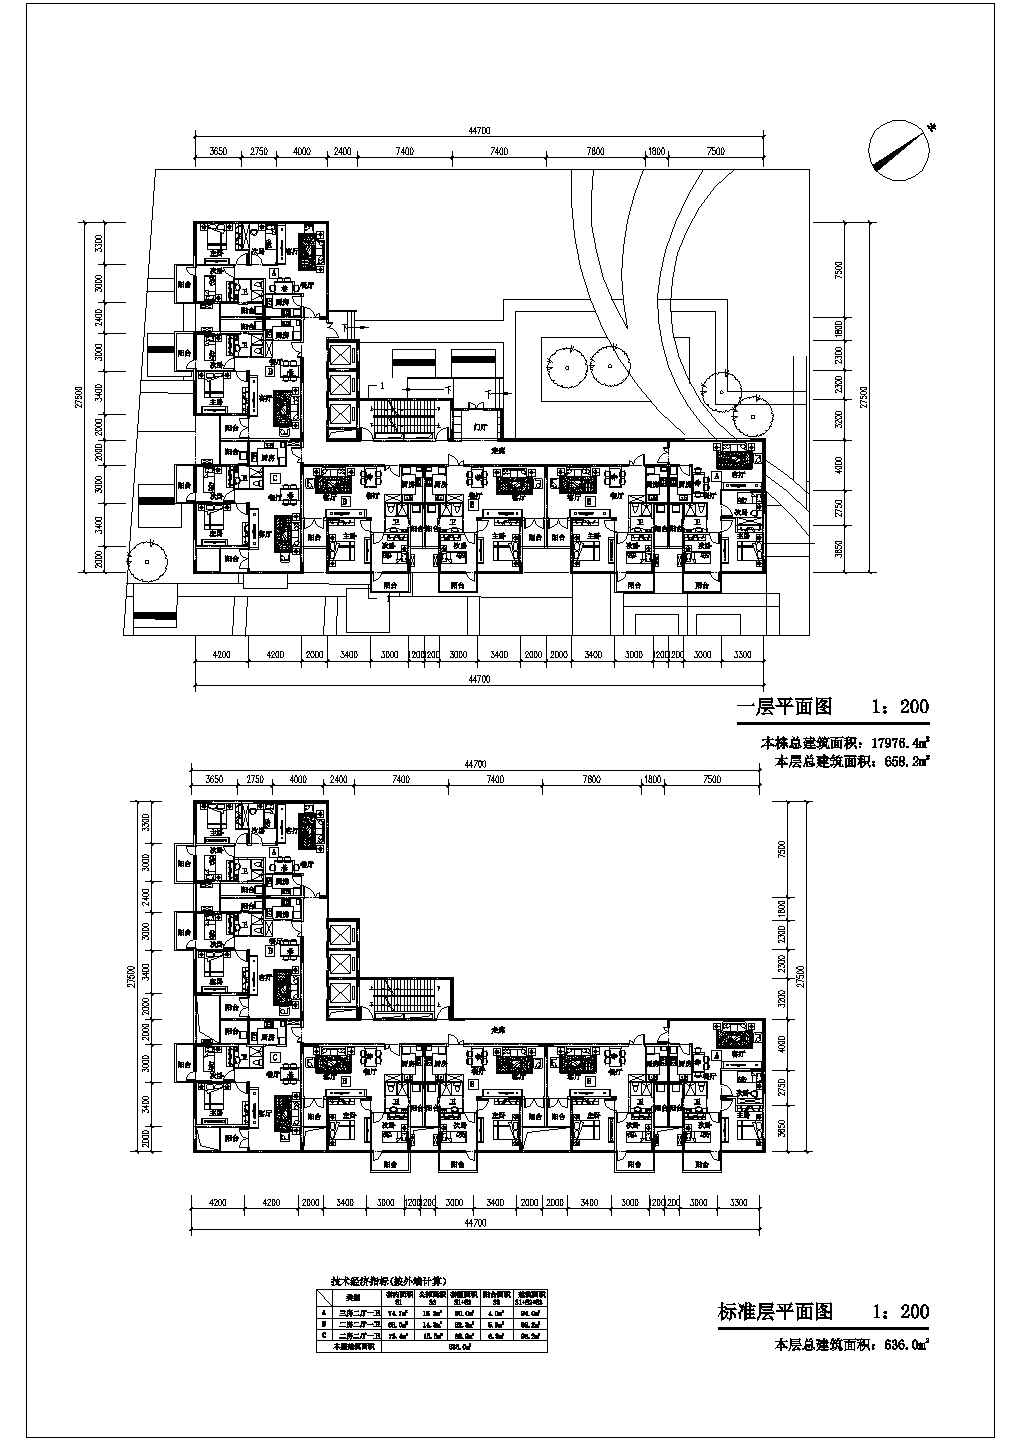 经济住宅小区总图和单体方案图